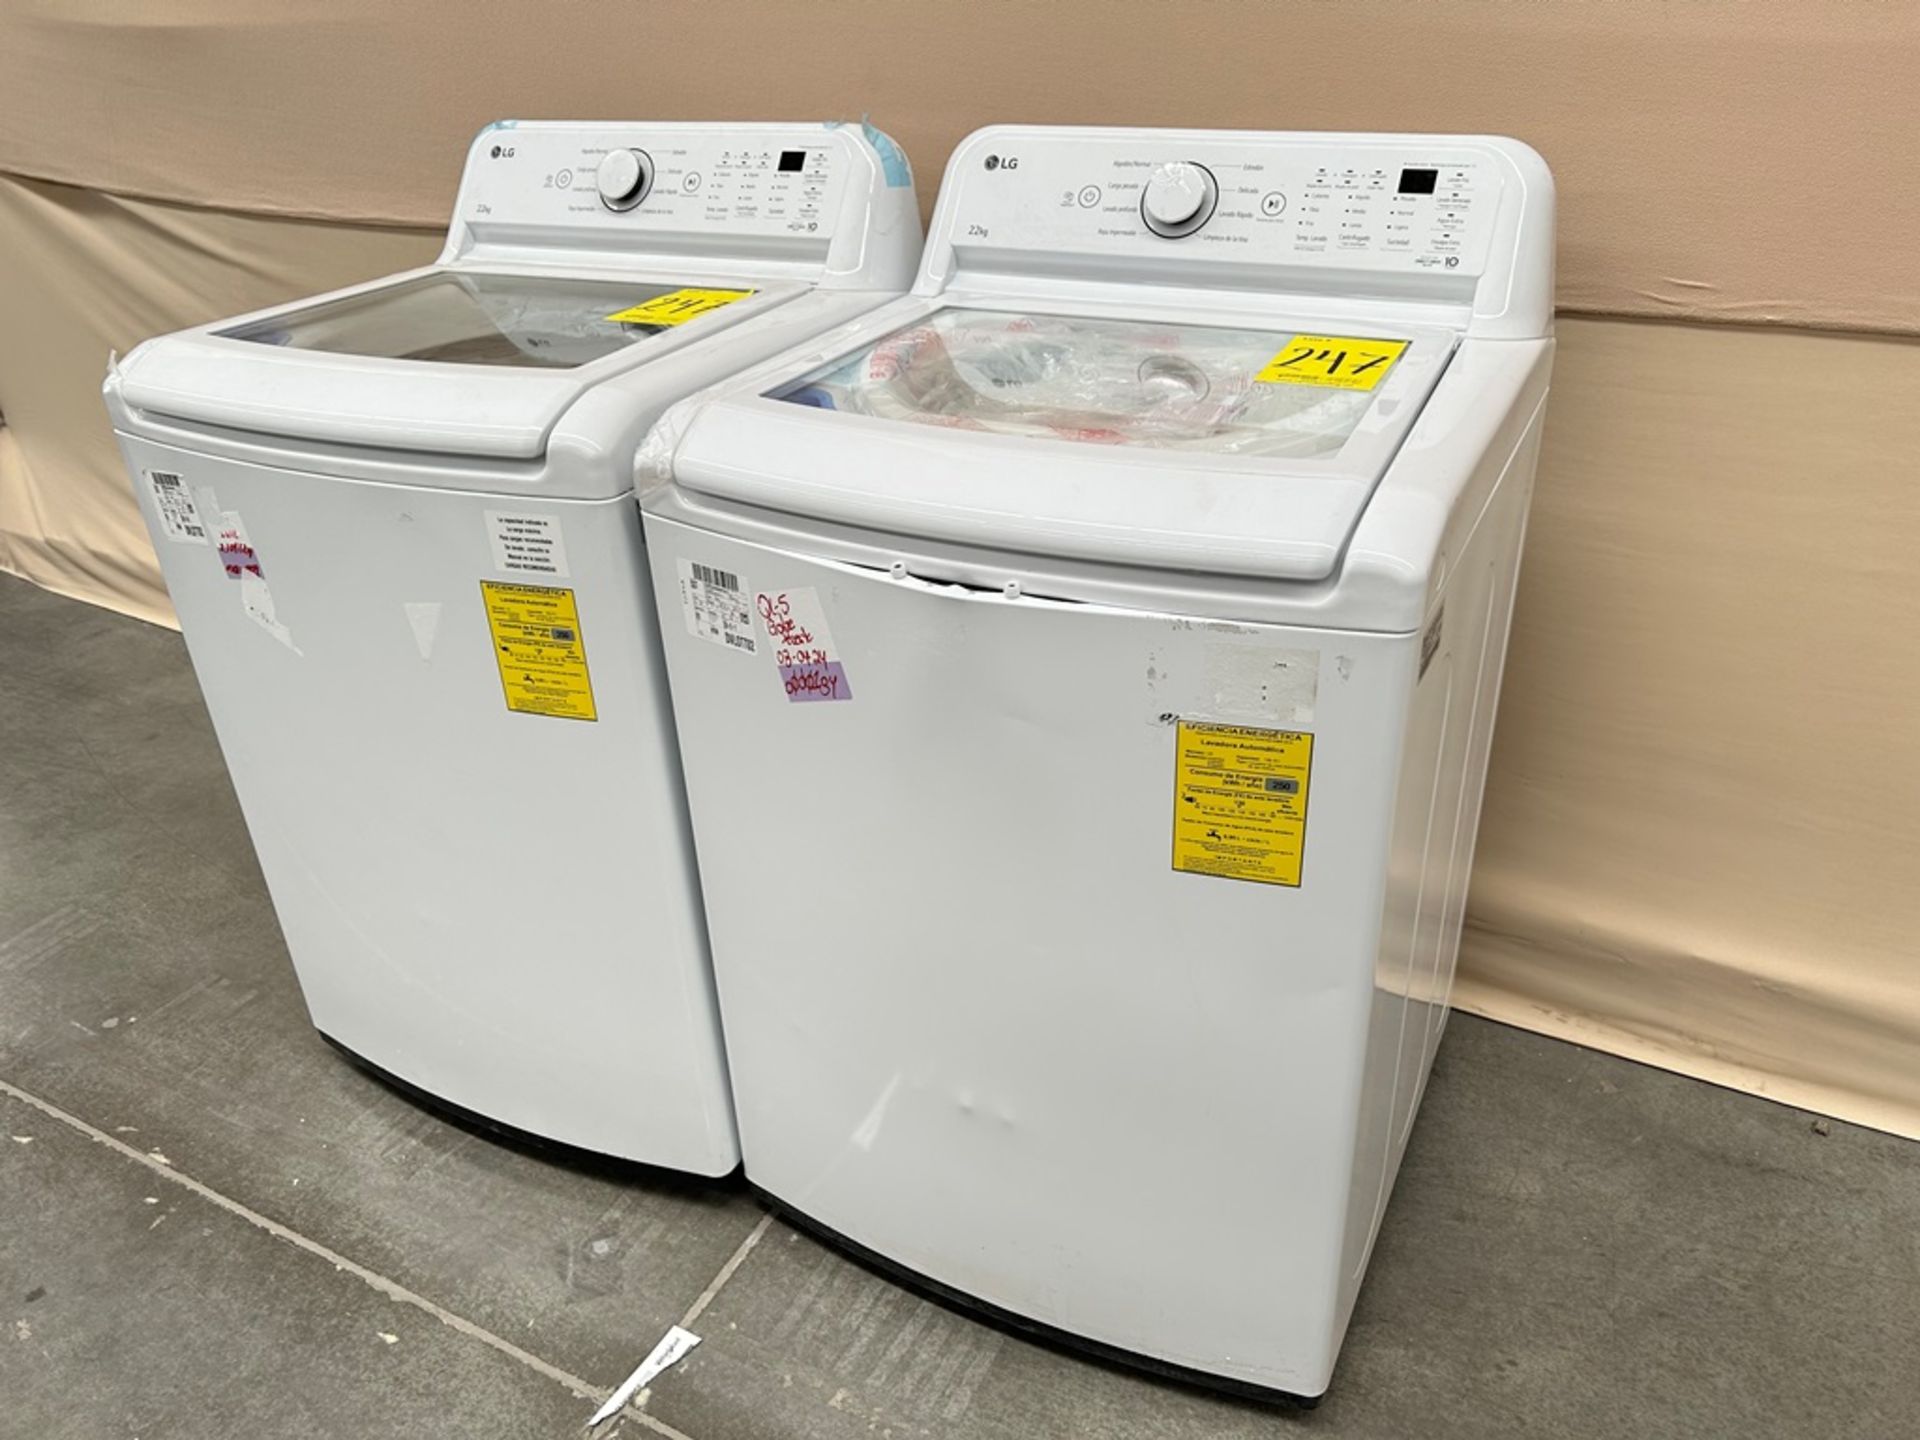 Lote de 2 lavadoras contiene: 1 Lavadora de 22 KG Marca LG, Modelo WT22WT6HK, Serie 37591, Color BL - Image 3 of 6